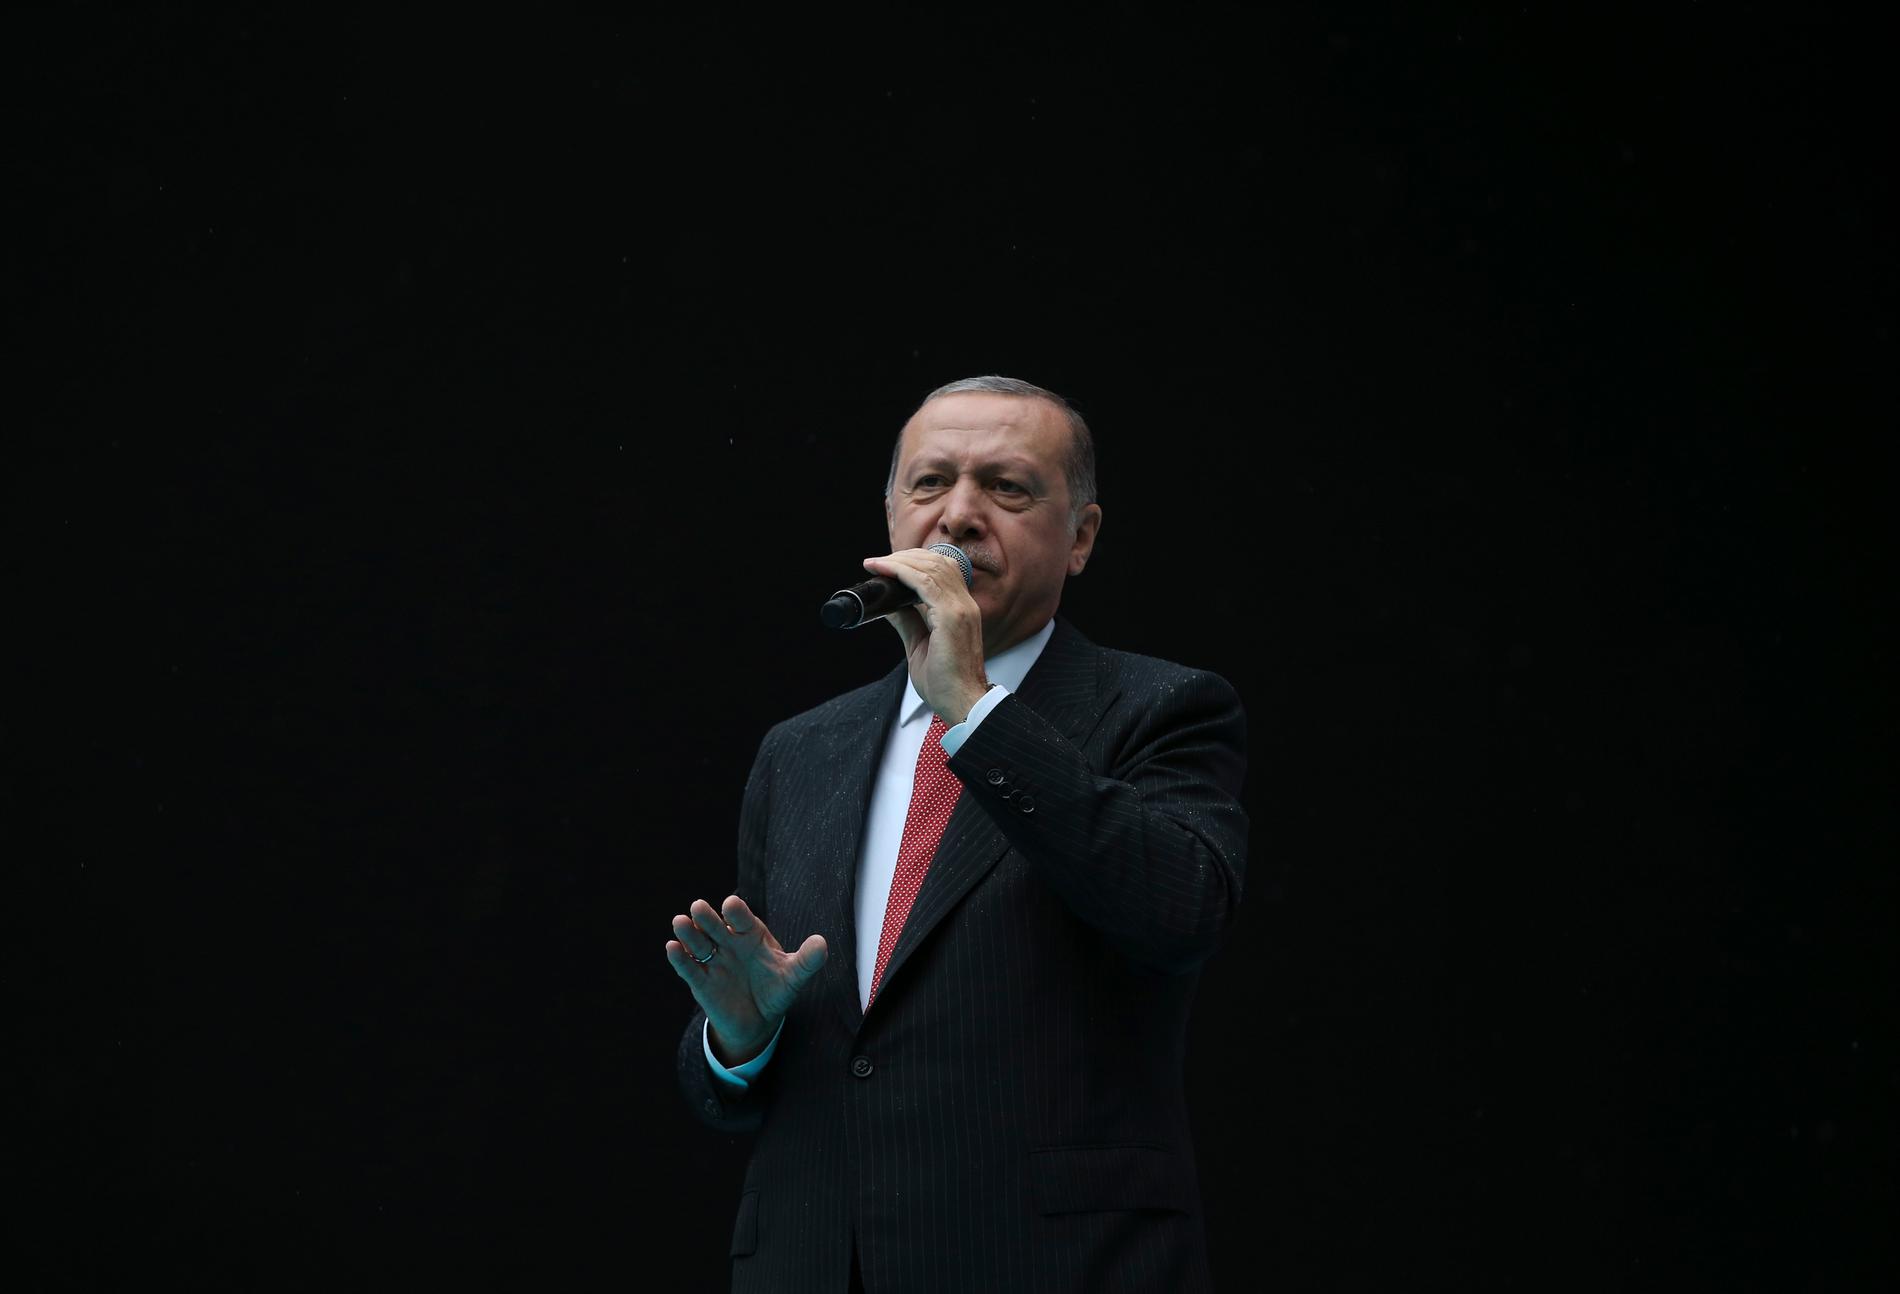 Recep Tayyip Erdogans långvariga maktposition utmanades i ett kuppförsök den 15 juli 2016. Efter tolv timmar var han tillbaka och numera har han stärkt sin makt betydligt.